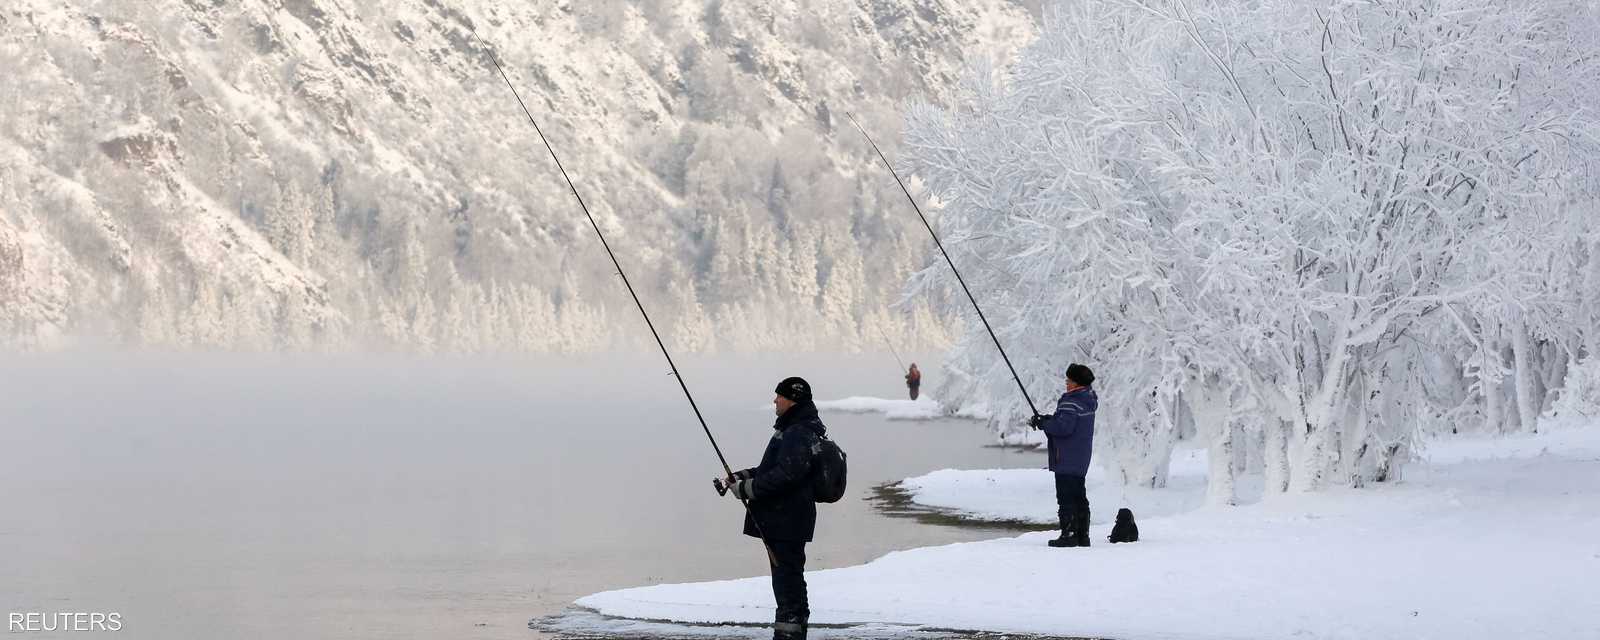 الصيد له طعم خاص في سيبيريا